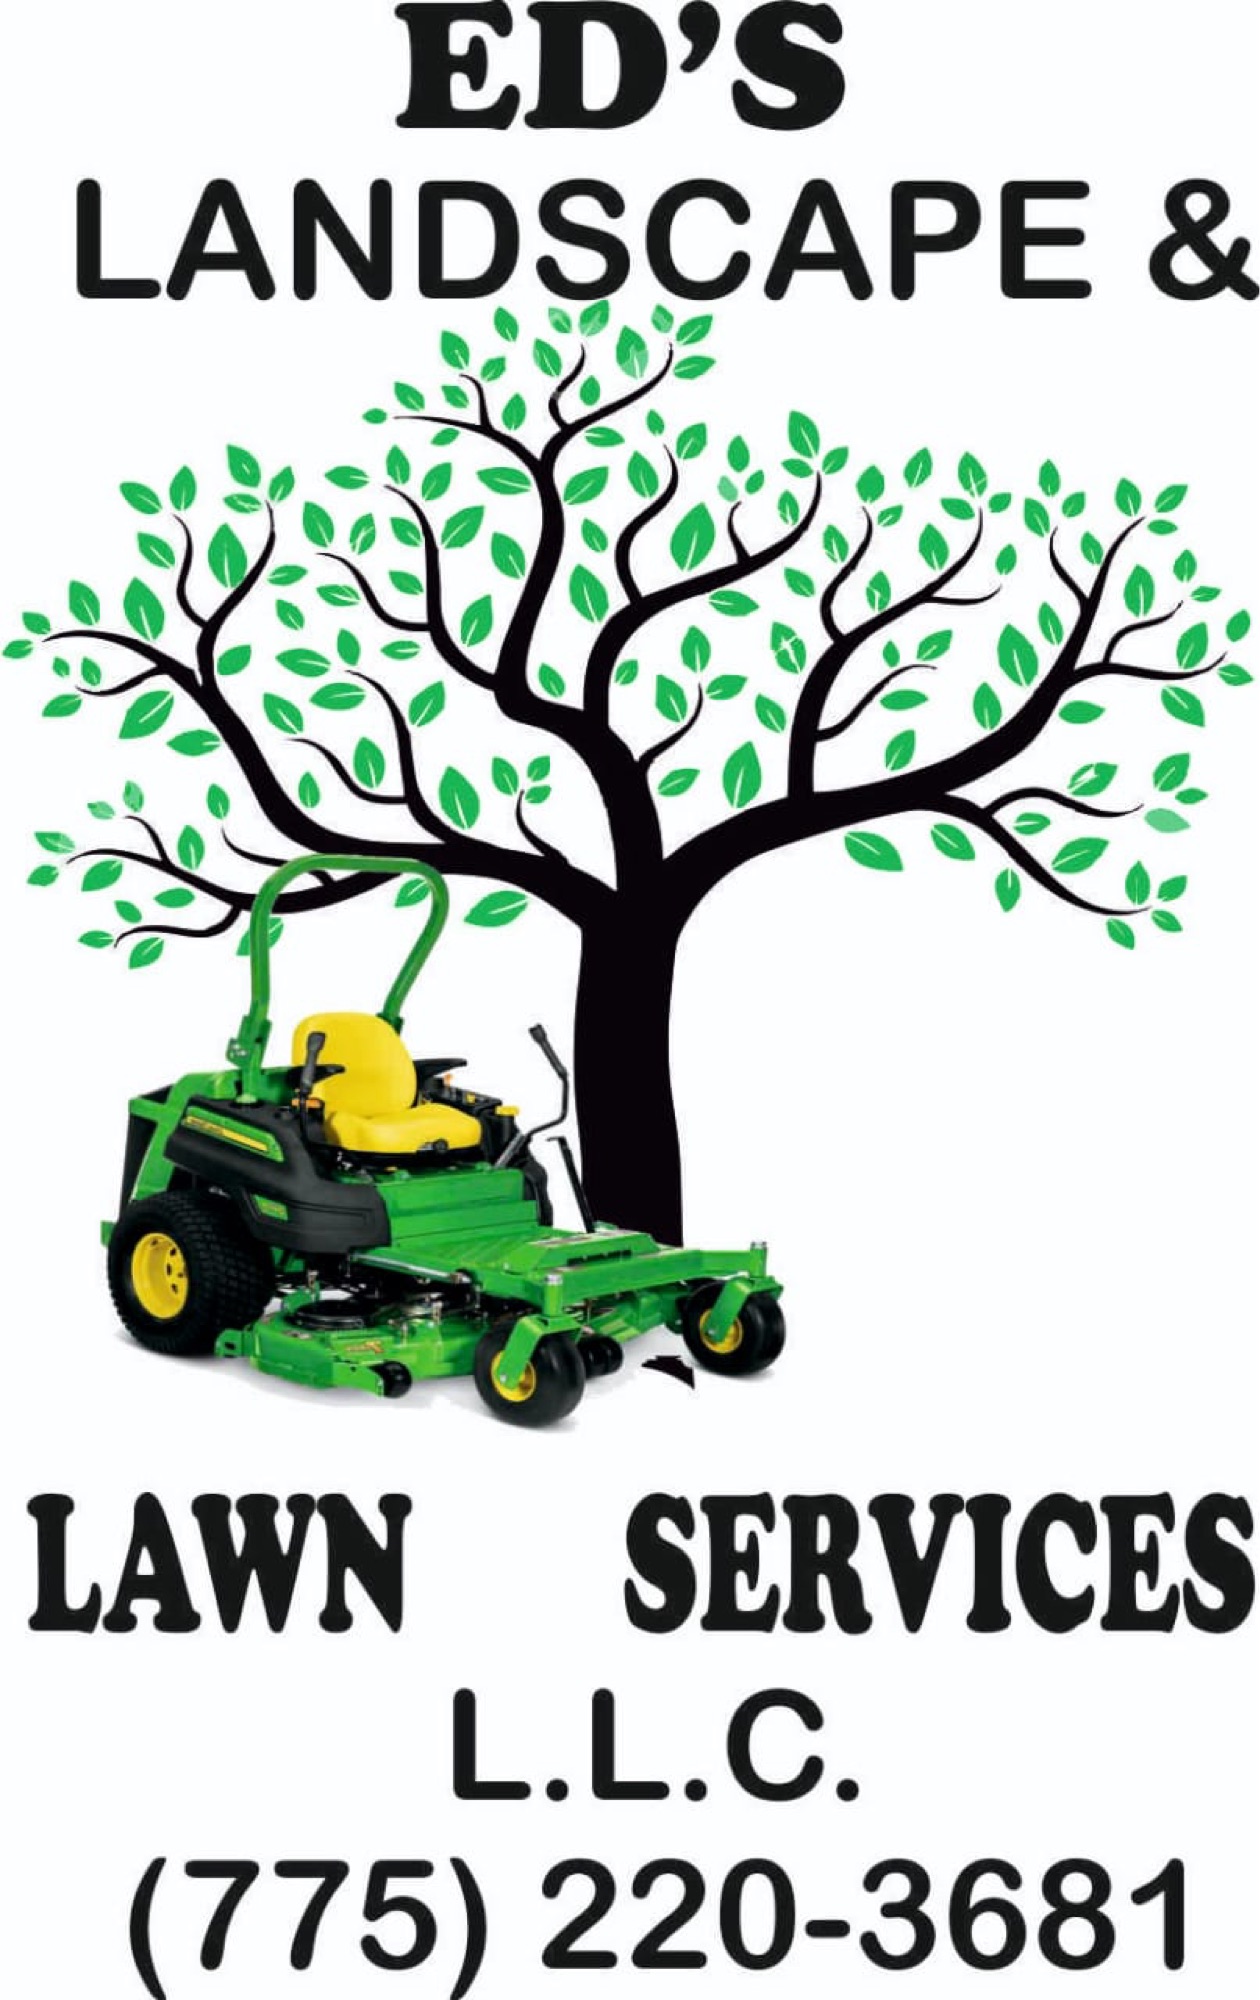 Ed's Landscape & Lawn Services, LLC Logo